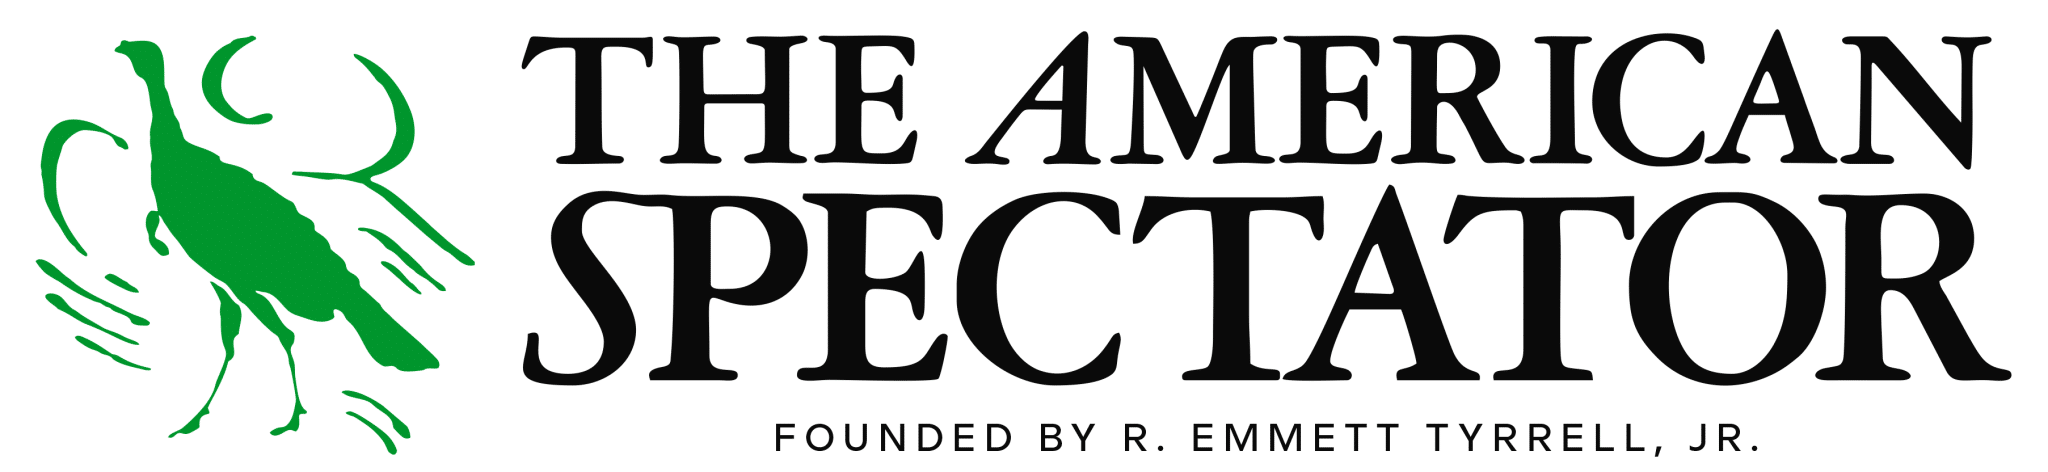 Spectator logo